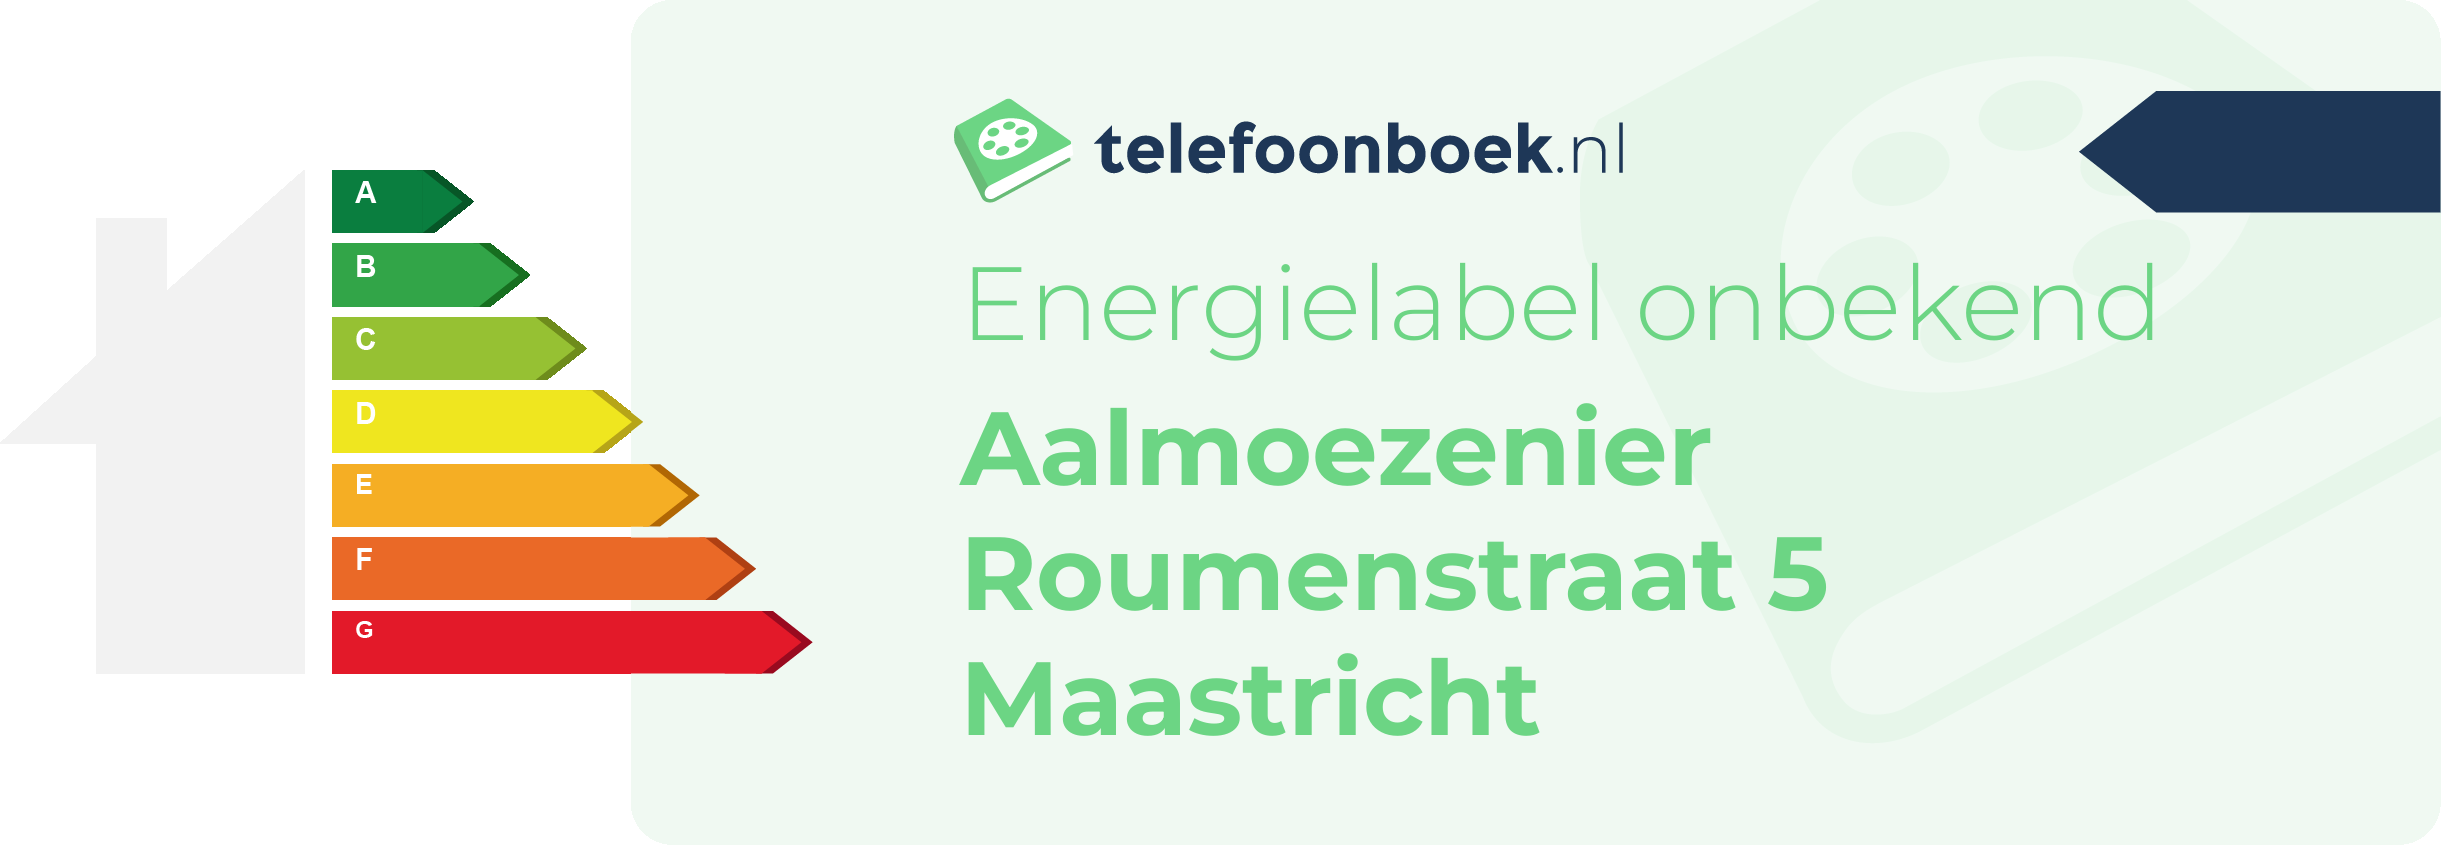 Energielabel Aalmoezenier Roumenstraat 5 Maastricht